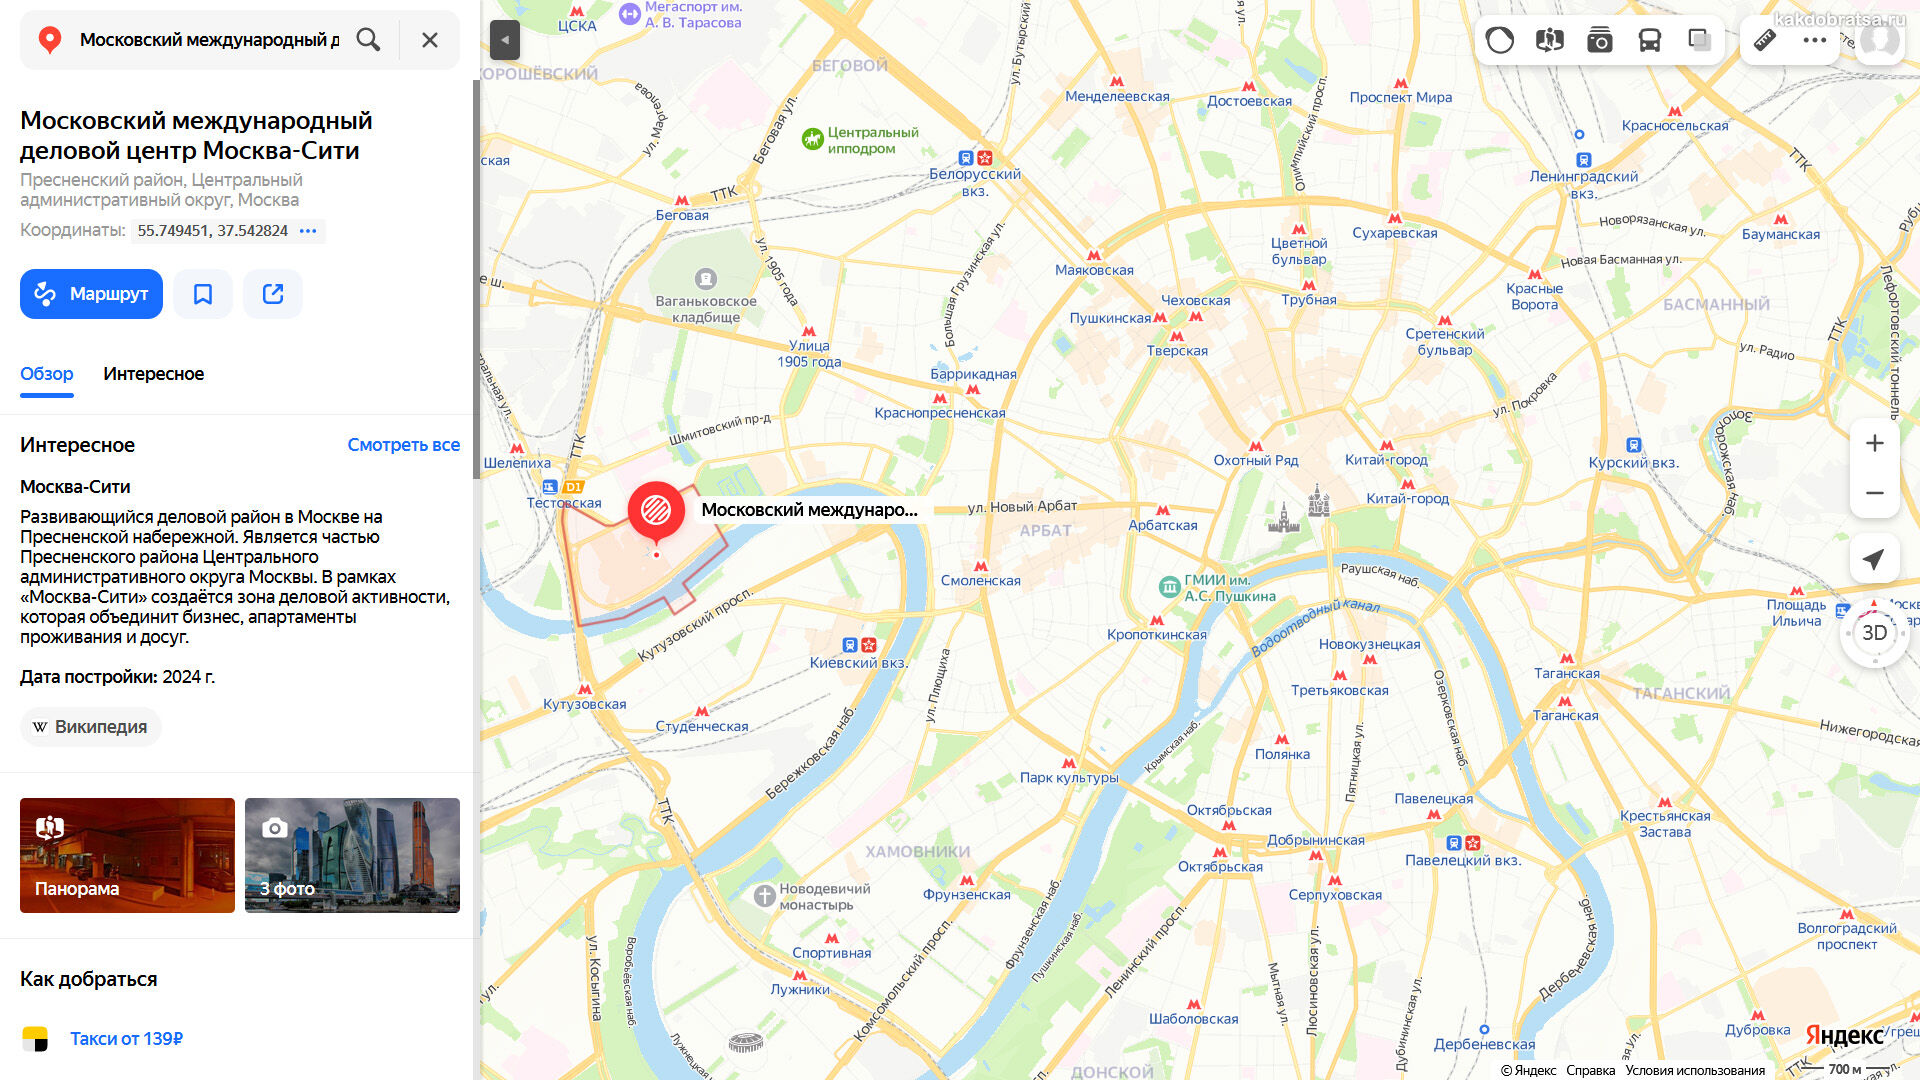 Сайт московски где. Москва Сити на карте Москвы. Карта Москвы Москва Сити на карте Москвы. Москва Сити на картаз.